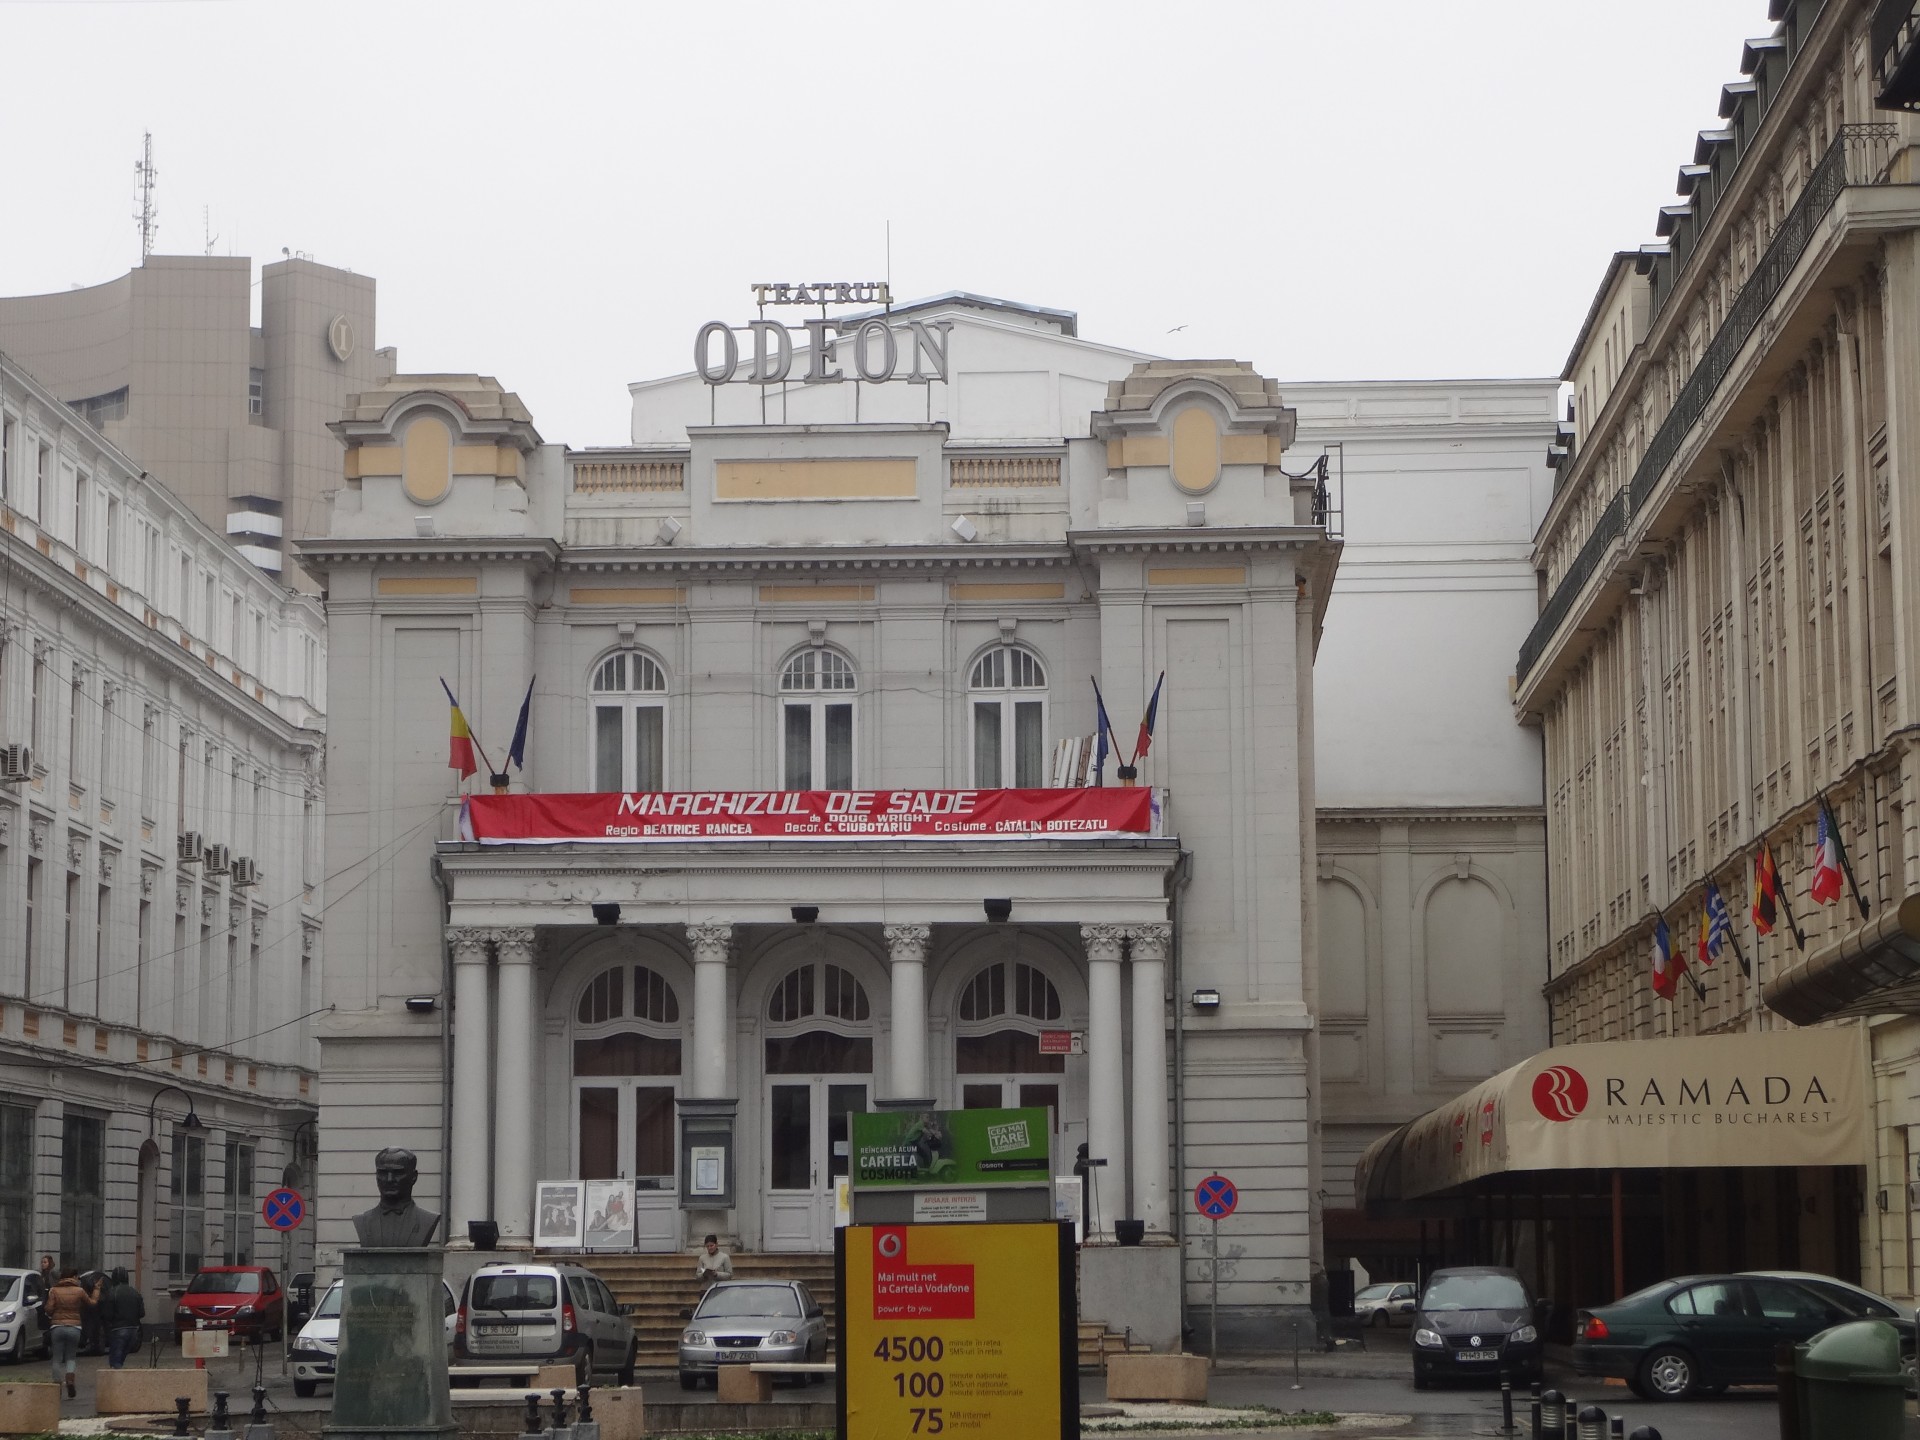 Teatrul Odeon / Majestic